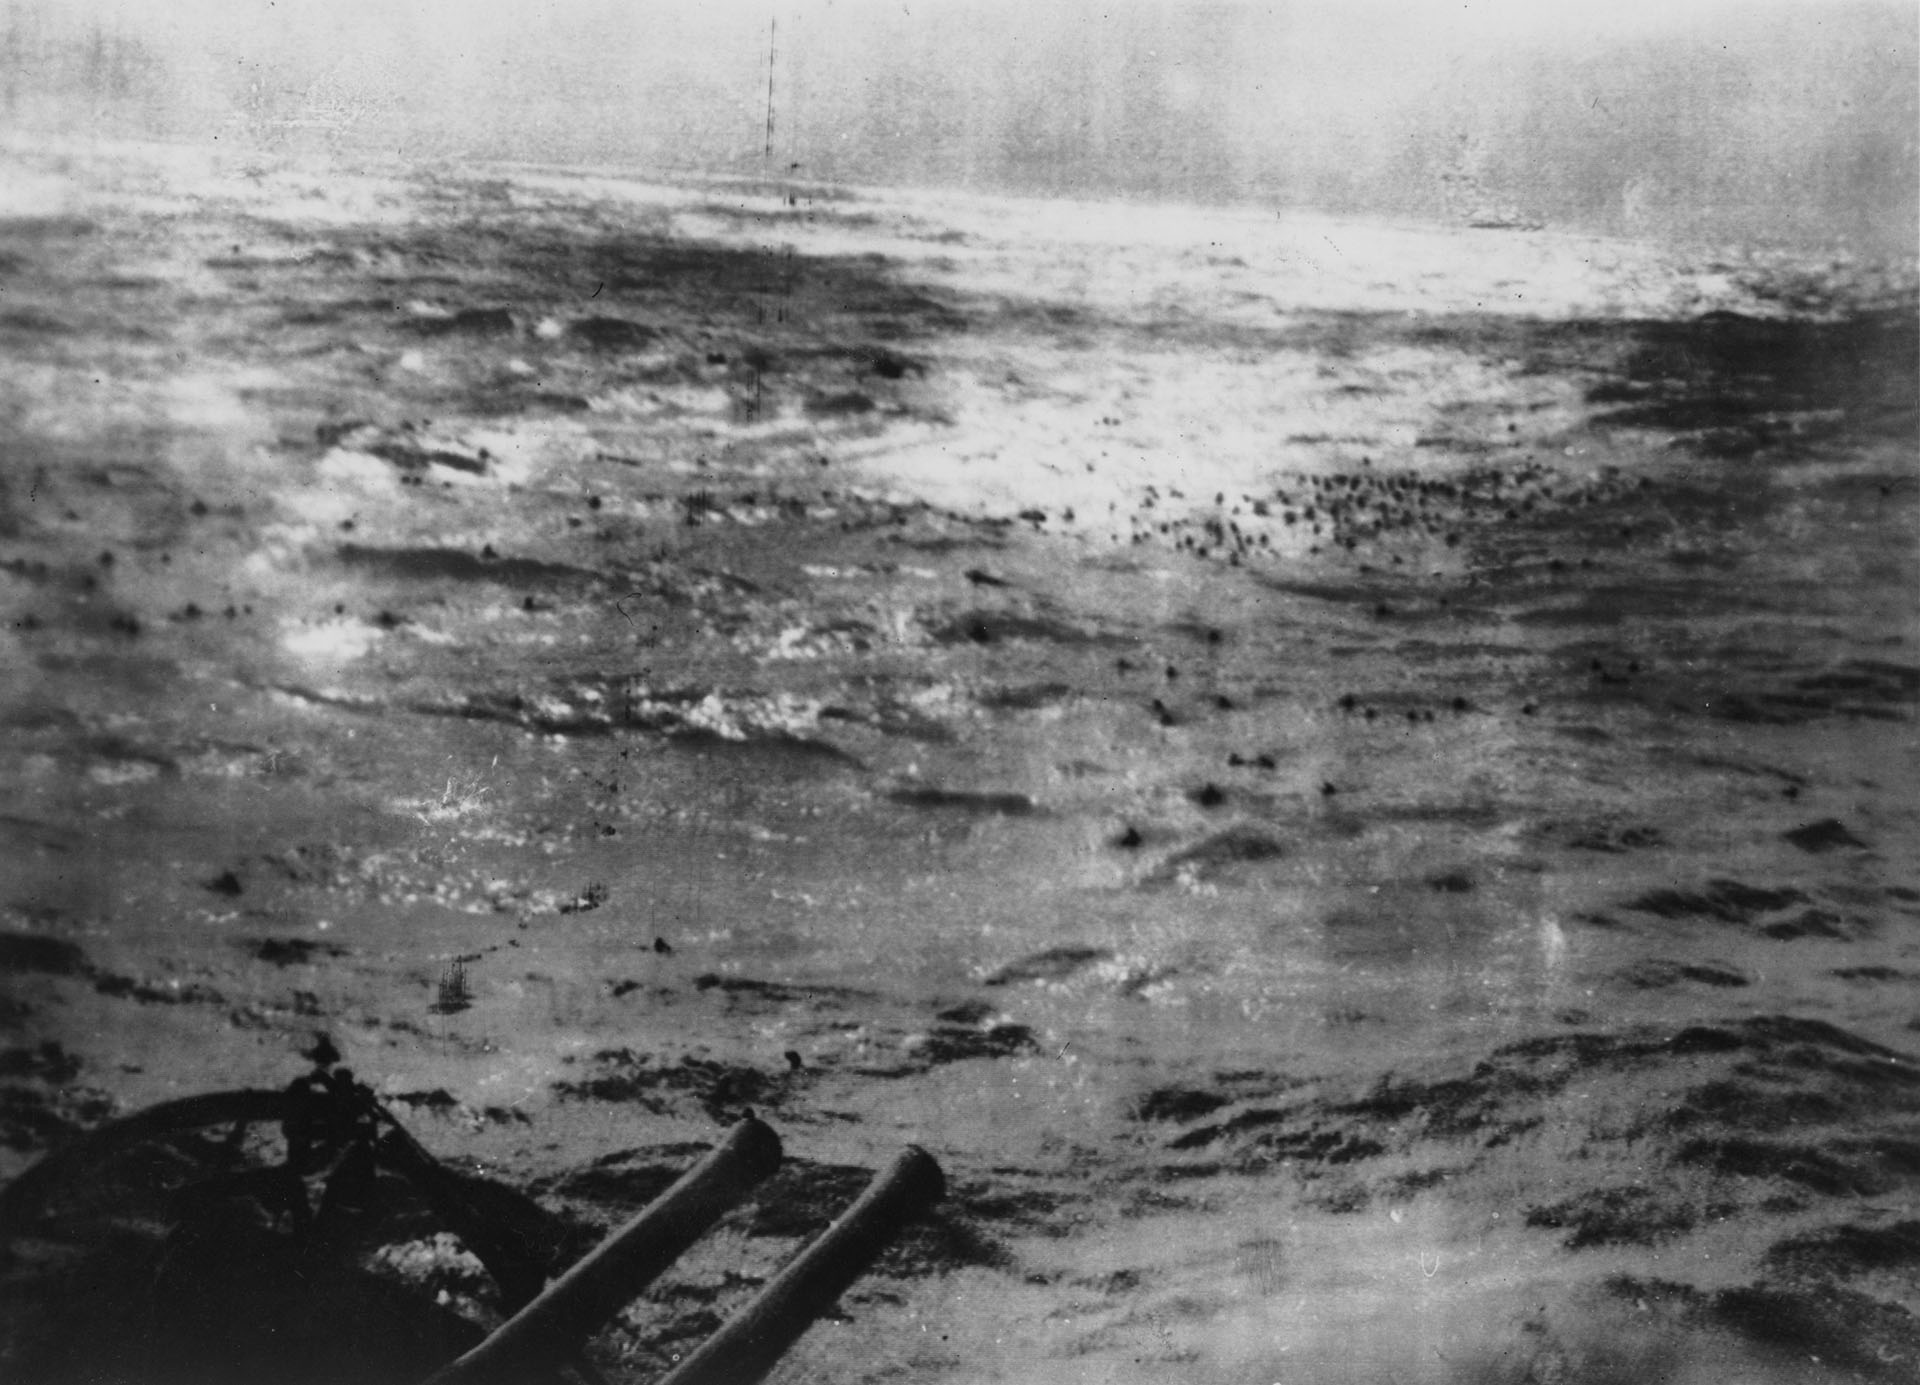 Los marineros del acorazado alemán Bismarck nadan hacia los barcos británicos, después de que su nave fuera atacada y hundida en el Atlántico Norte, el 27 de mayo de 1941. De una dotación de 2221 hombres, sobrevivieron solamente 114 (Keystone/Hulton Archive/Getty Images)
